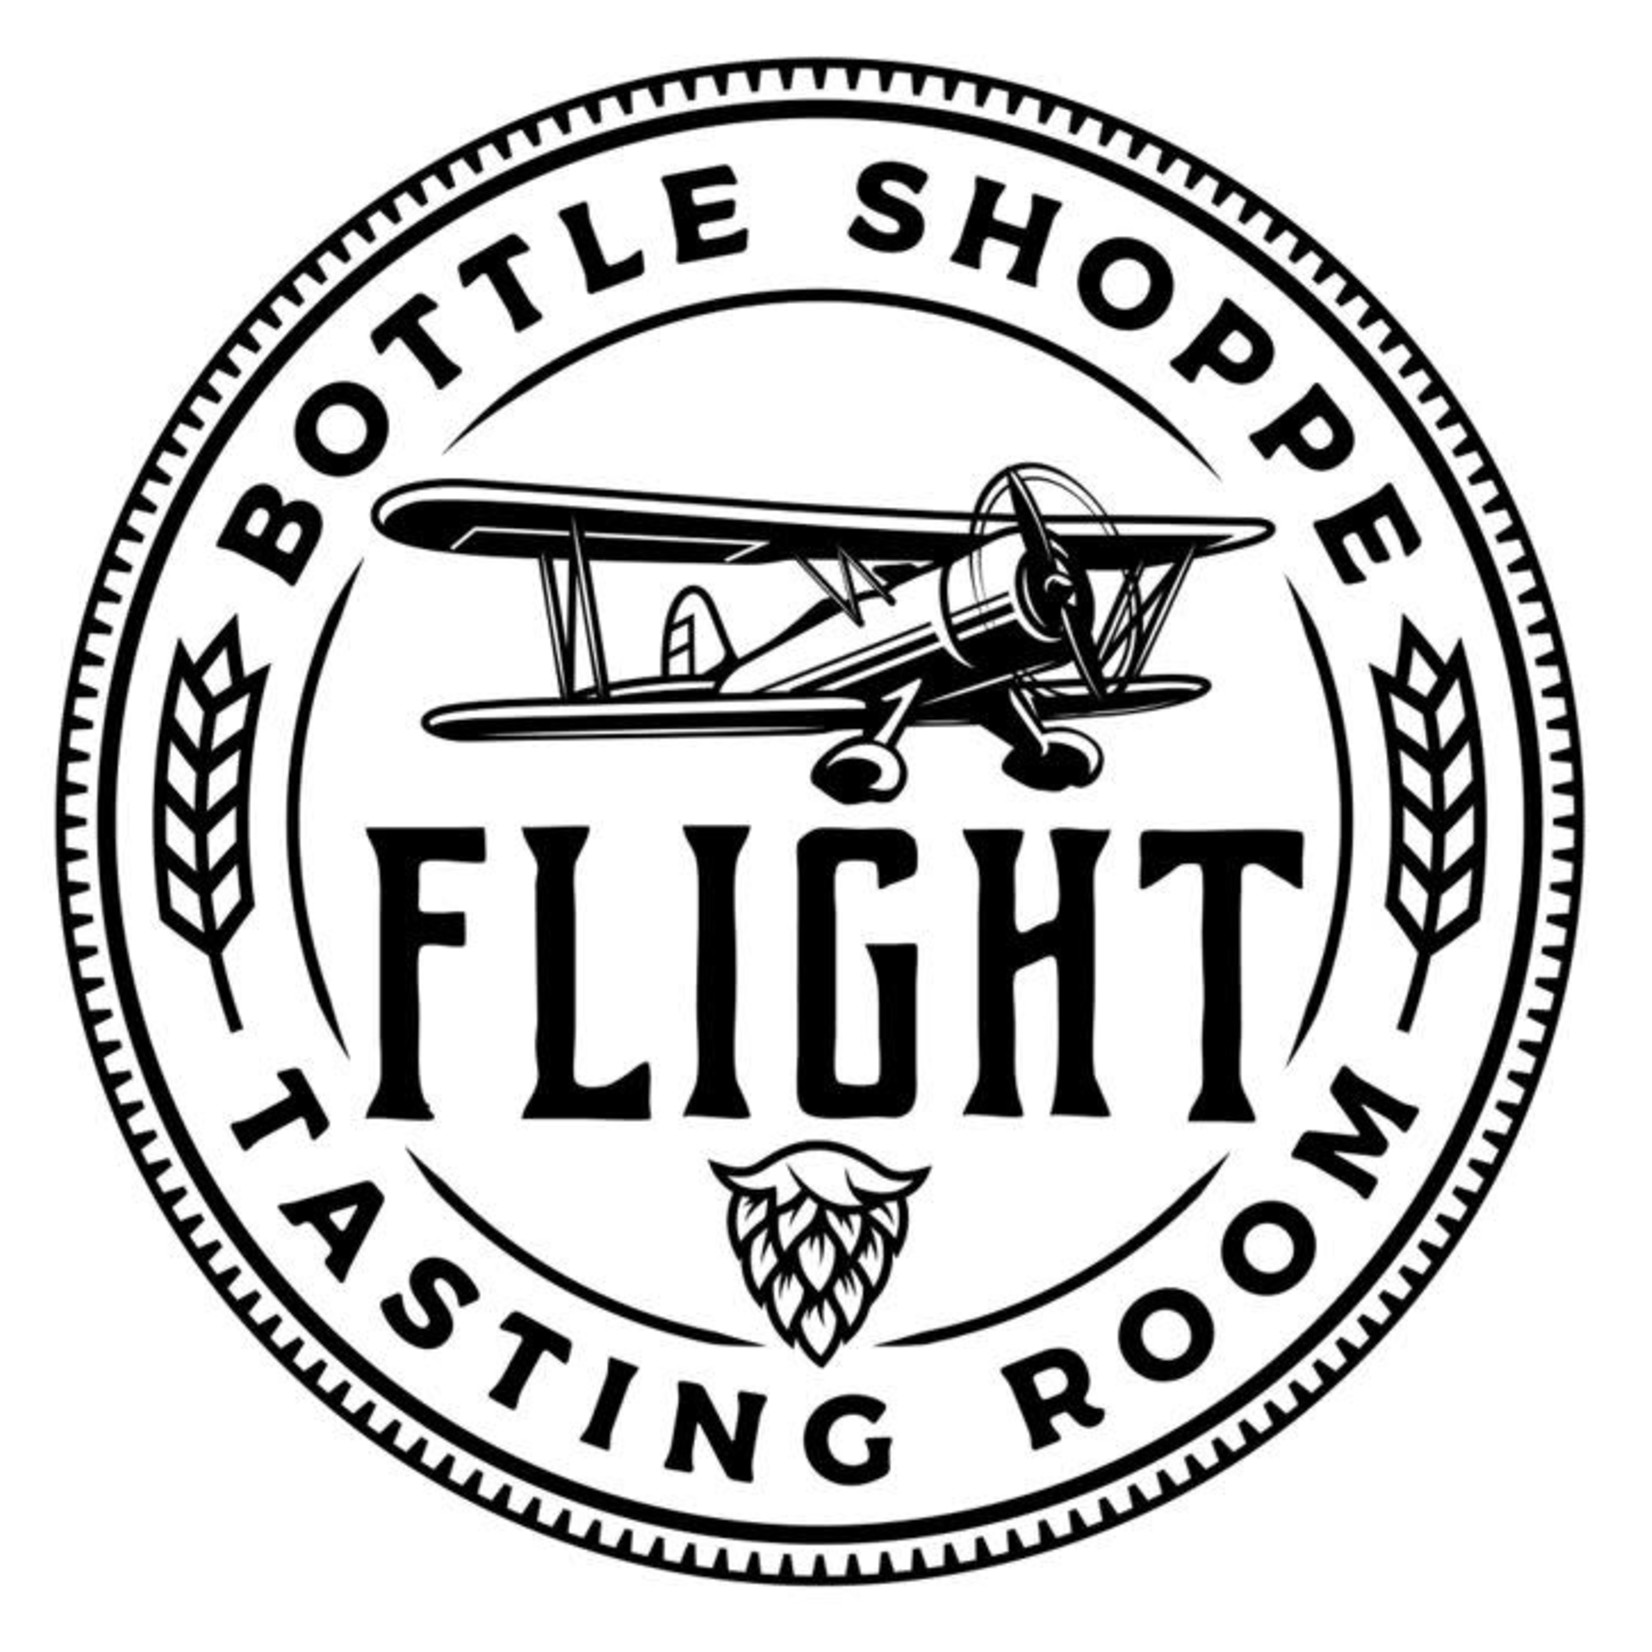 Flight Tasting Room & Bottle Shoppe-Yorkville Flight Tasting Room & Bottle Shoppe-Yorkville $10.00 Merchandise Certificate